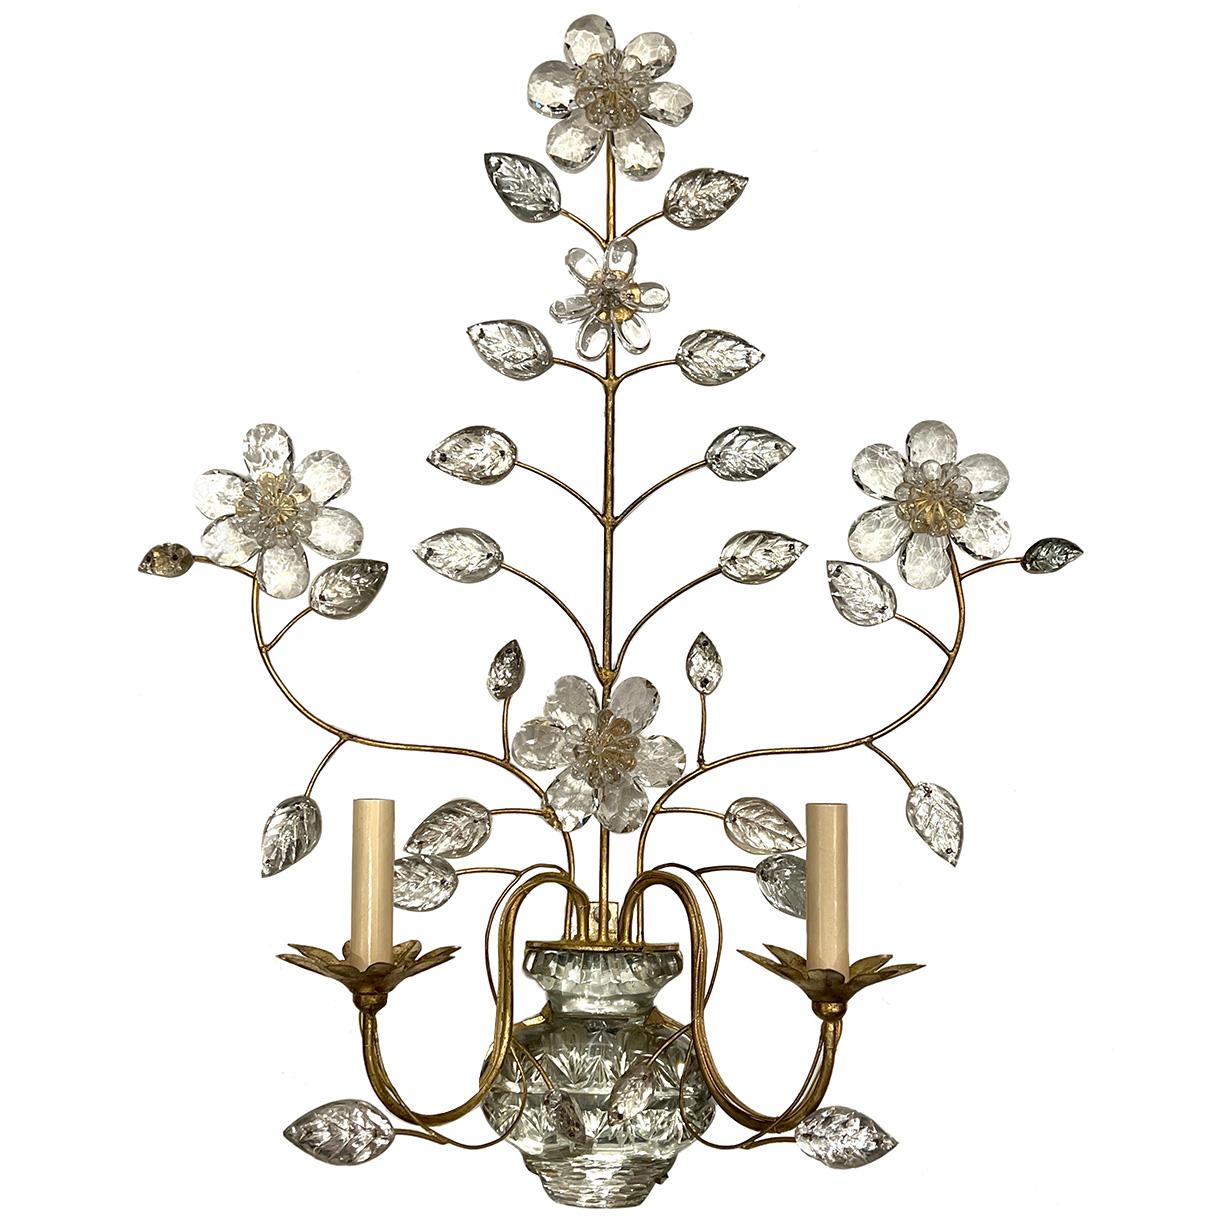 Paire d'appliques françaises des années 1940 en métal doré avec feuilles de verre moulé et fleur en cristal, finition et patine d'origine.

Mesures :
Hauteur : 29